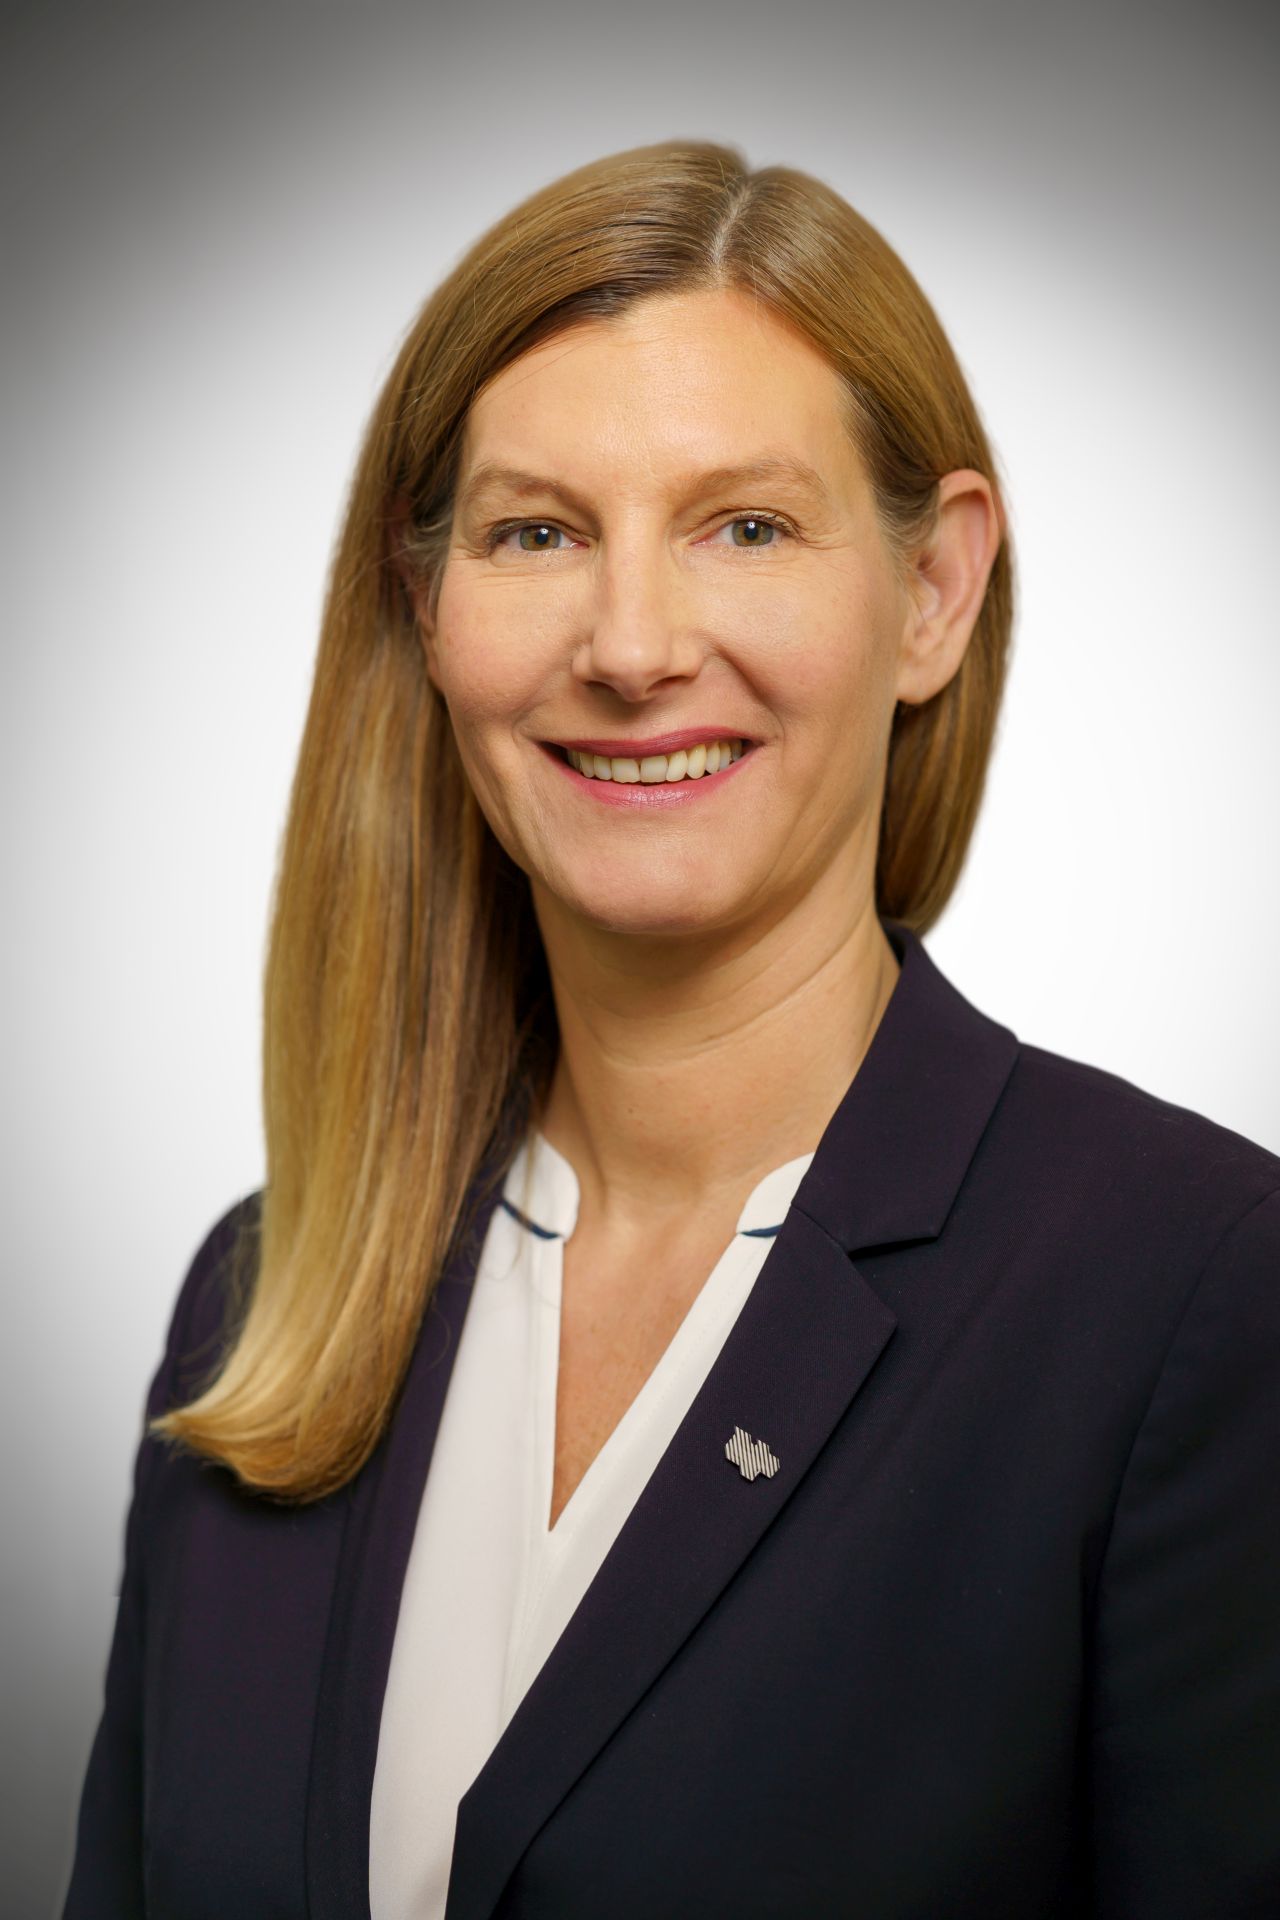 Portratifoto: Nina Frense ist Beigeordnete für den Bereich IV Umwelt und Grüne Infrastruktur des Regionalverband Ruhr (RVR).